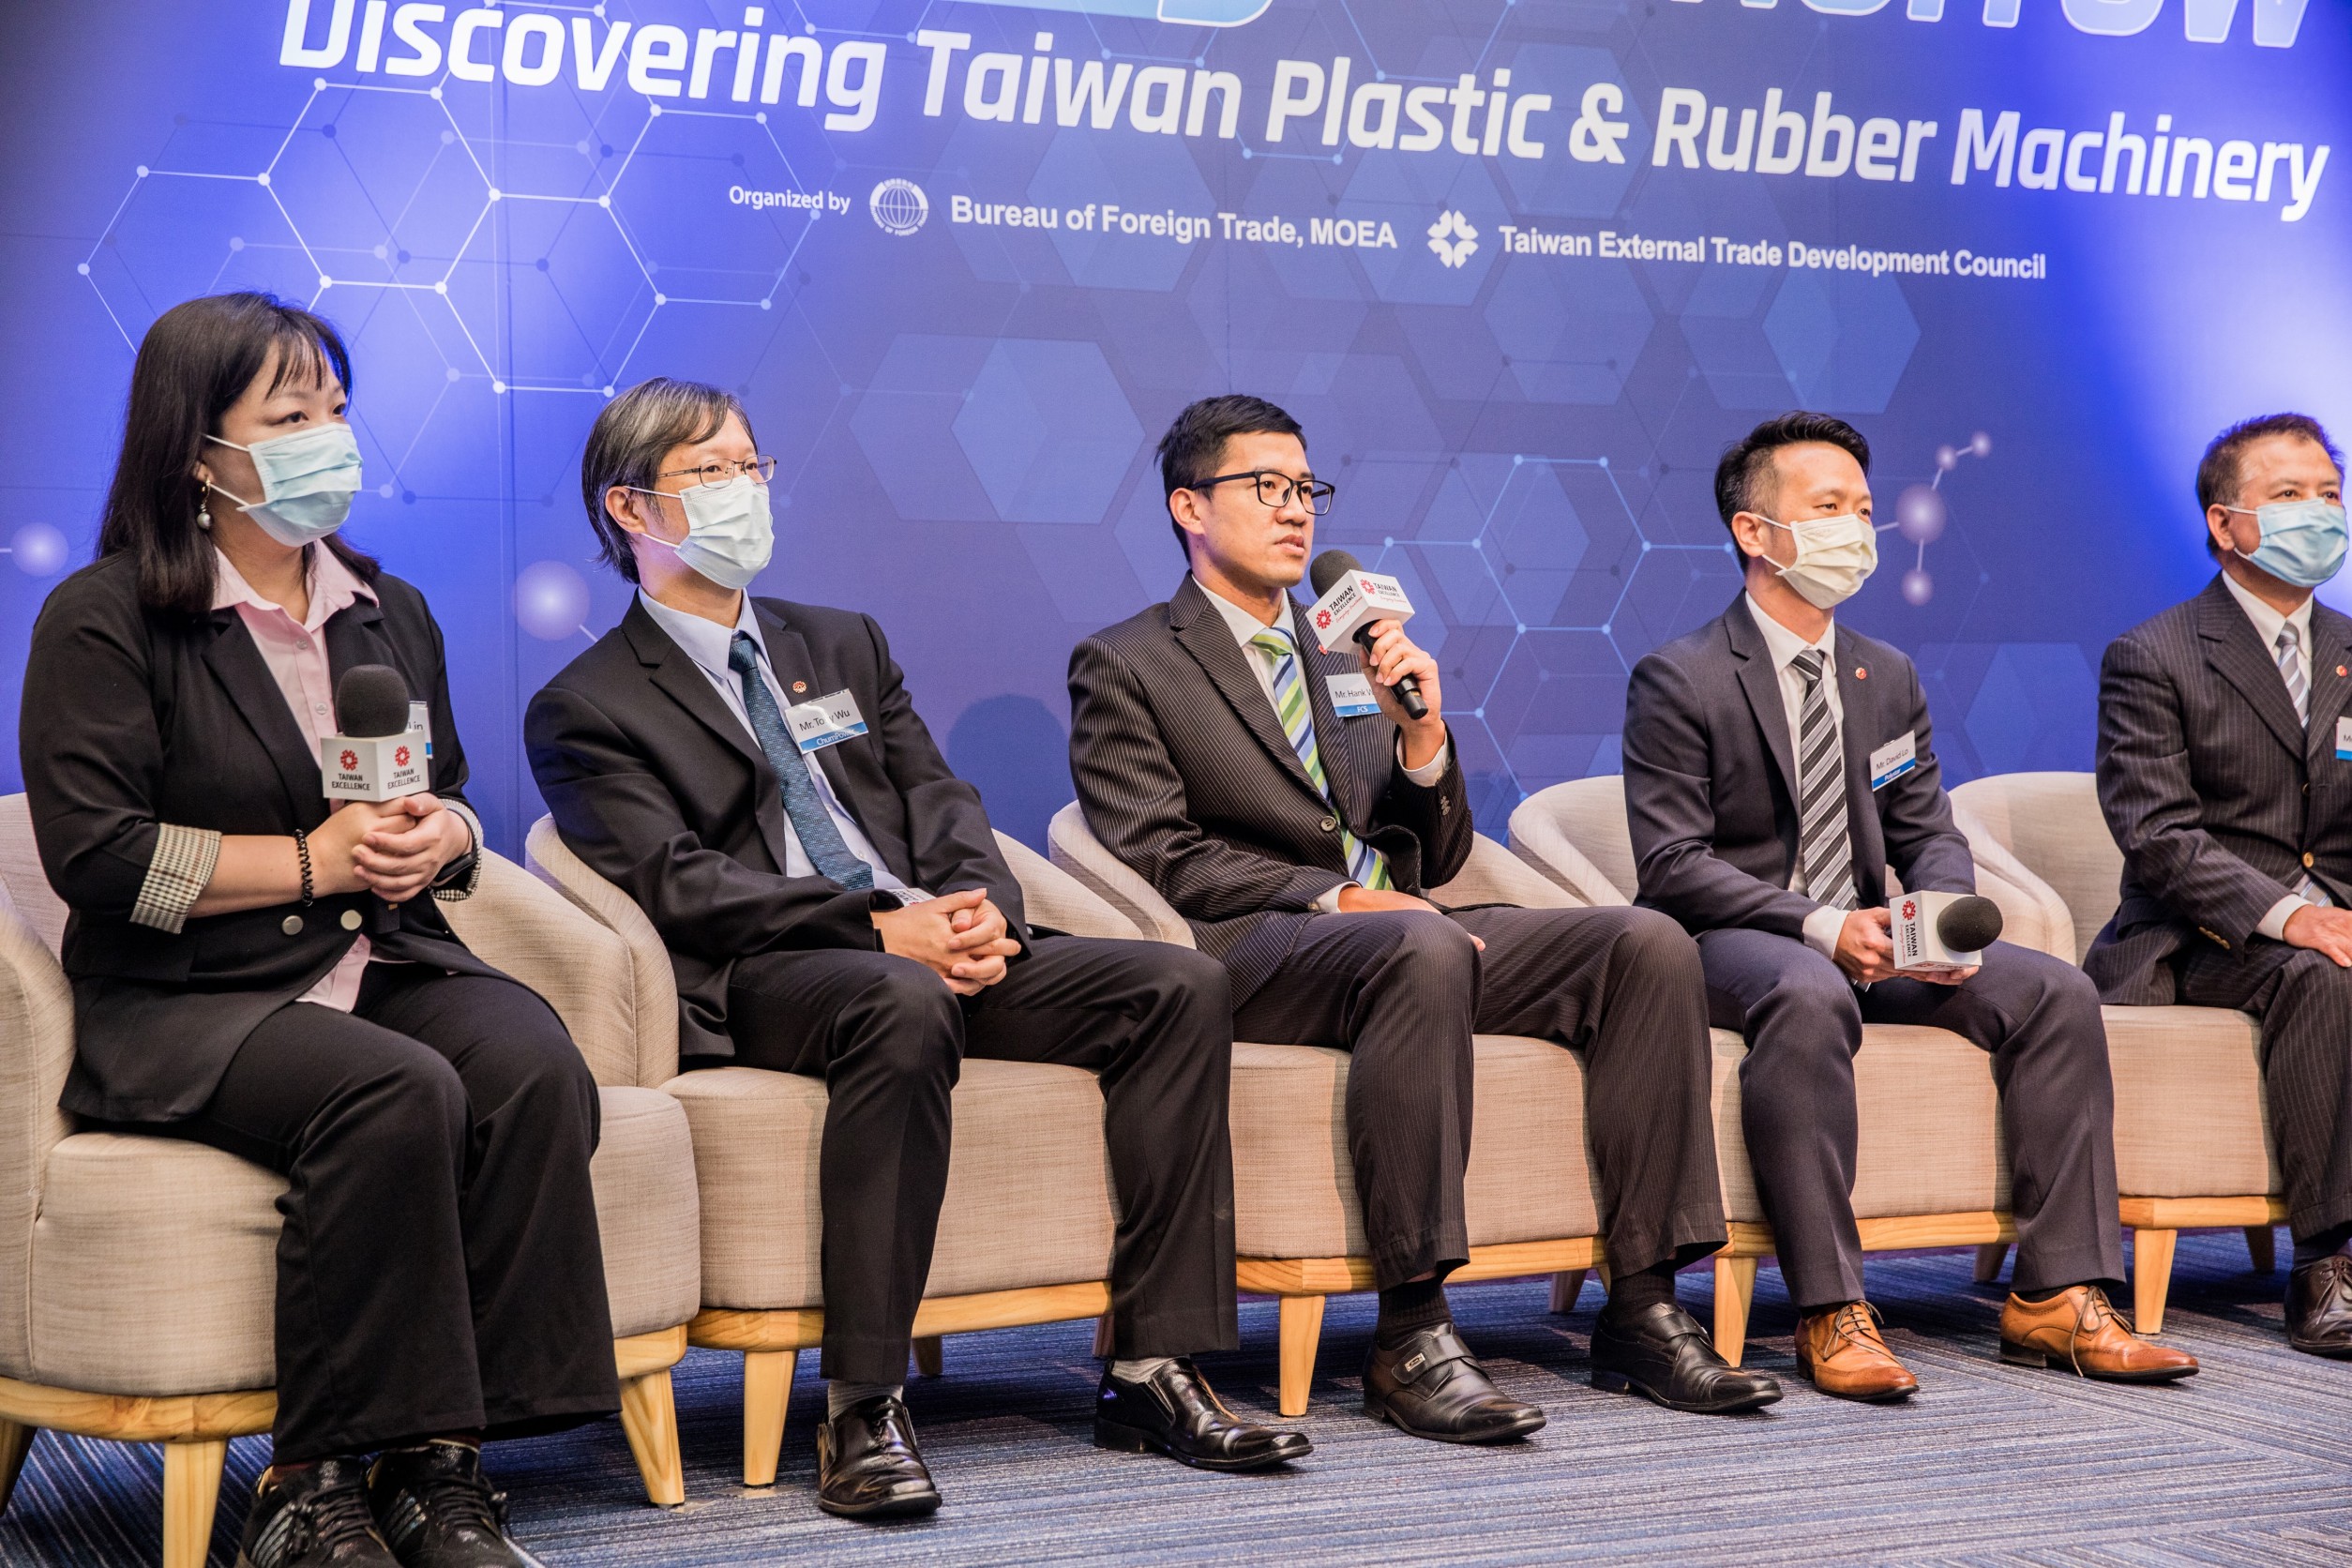 「塑」造未來趨勢台灣精品橡塑膠機械線上記者會